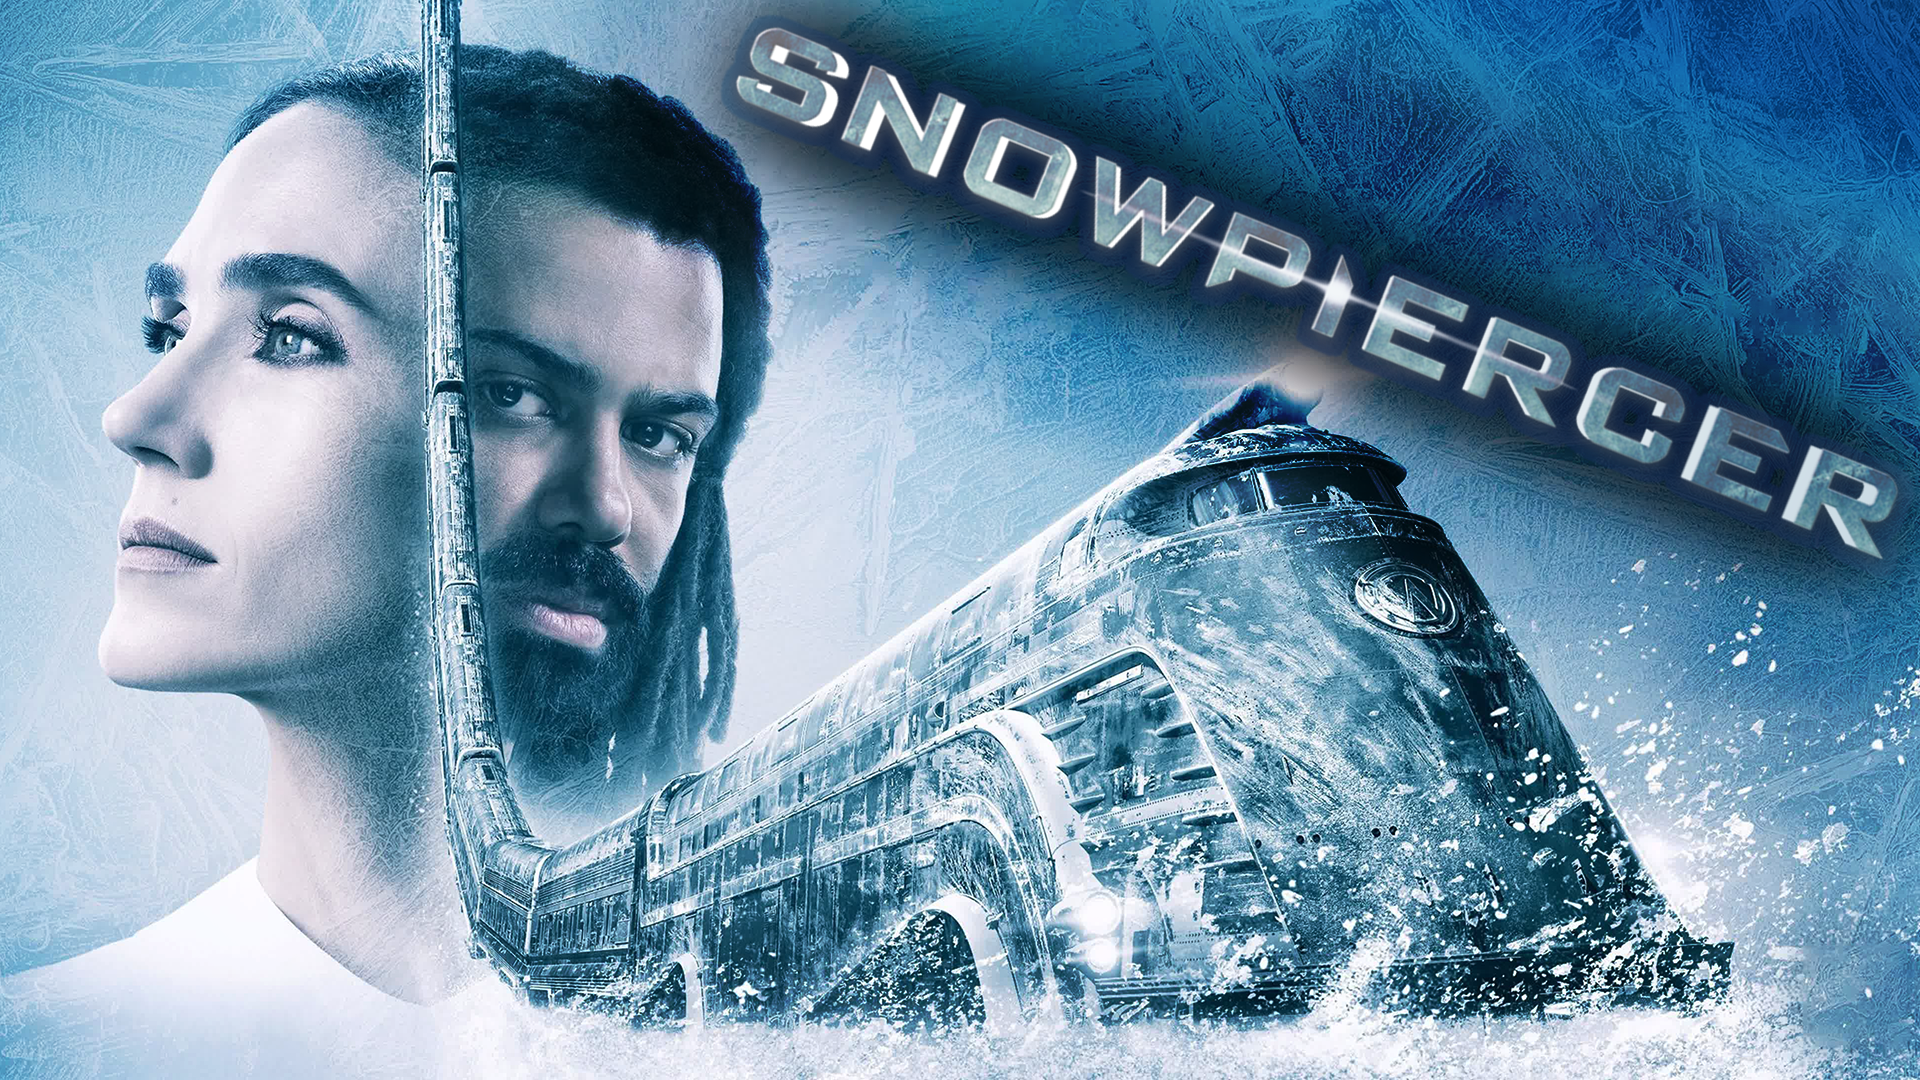 Сквозь снег – 1 сезон 8 серия / Snowpiercer